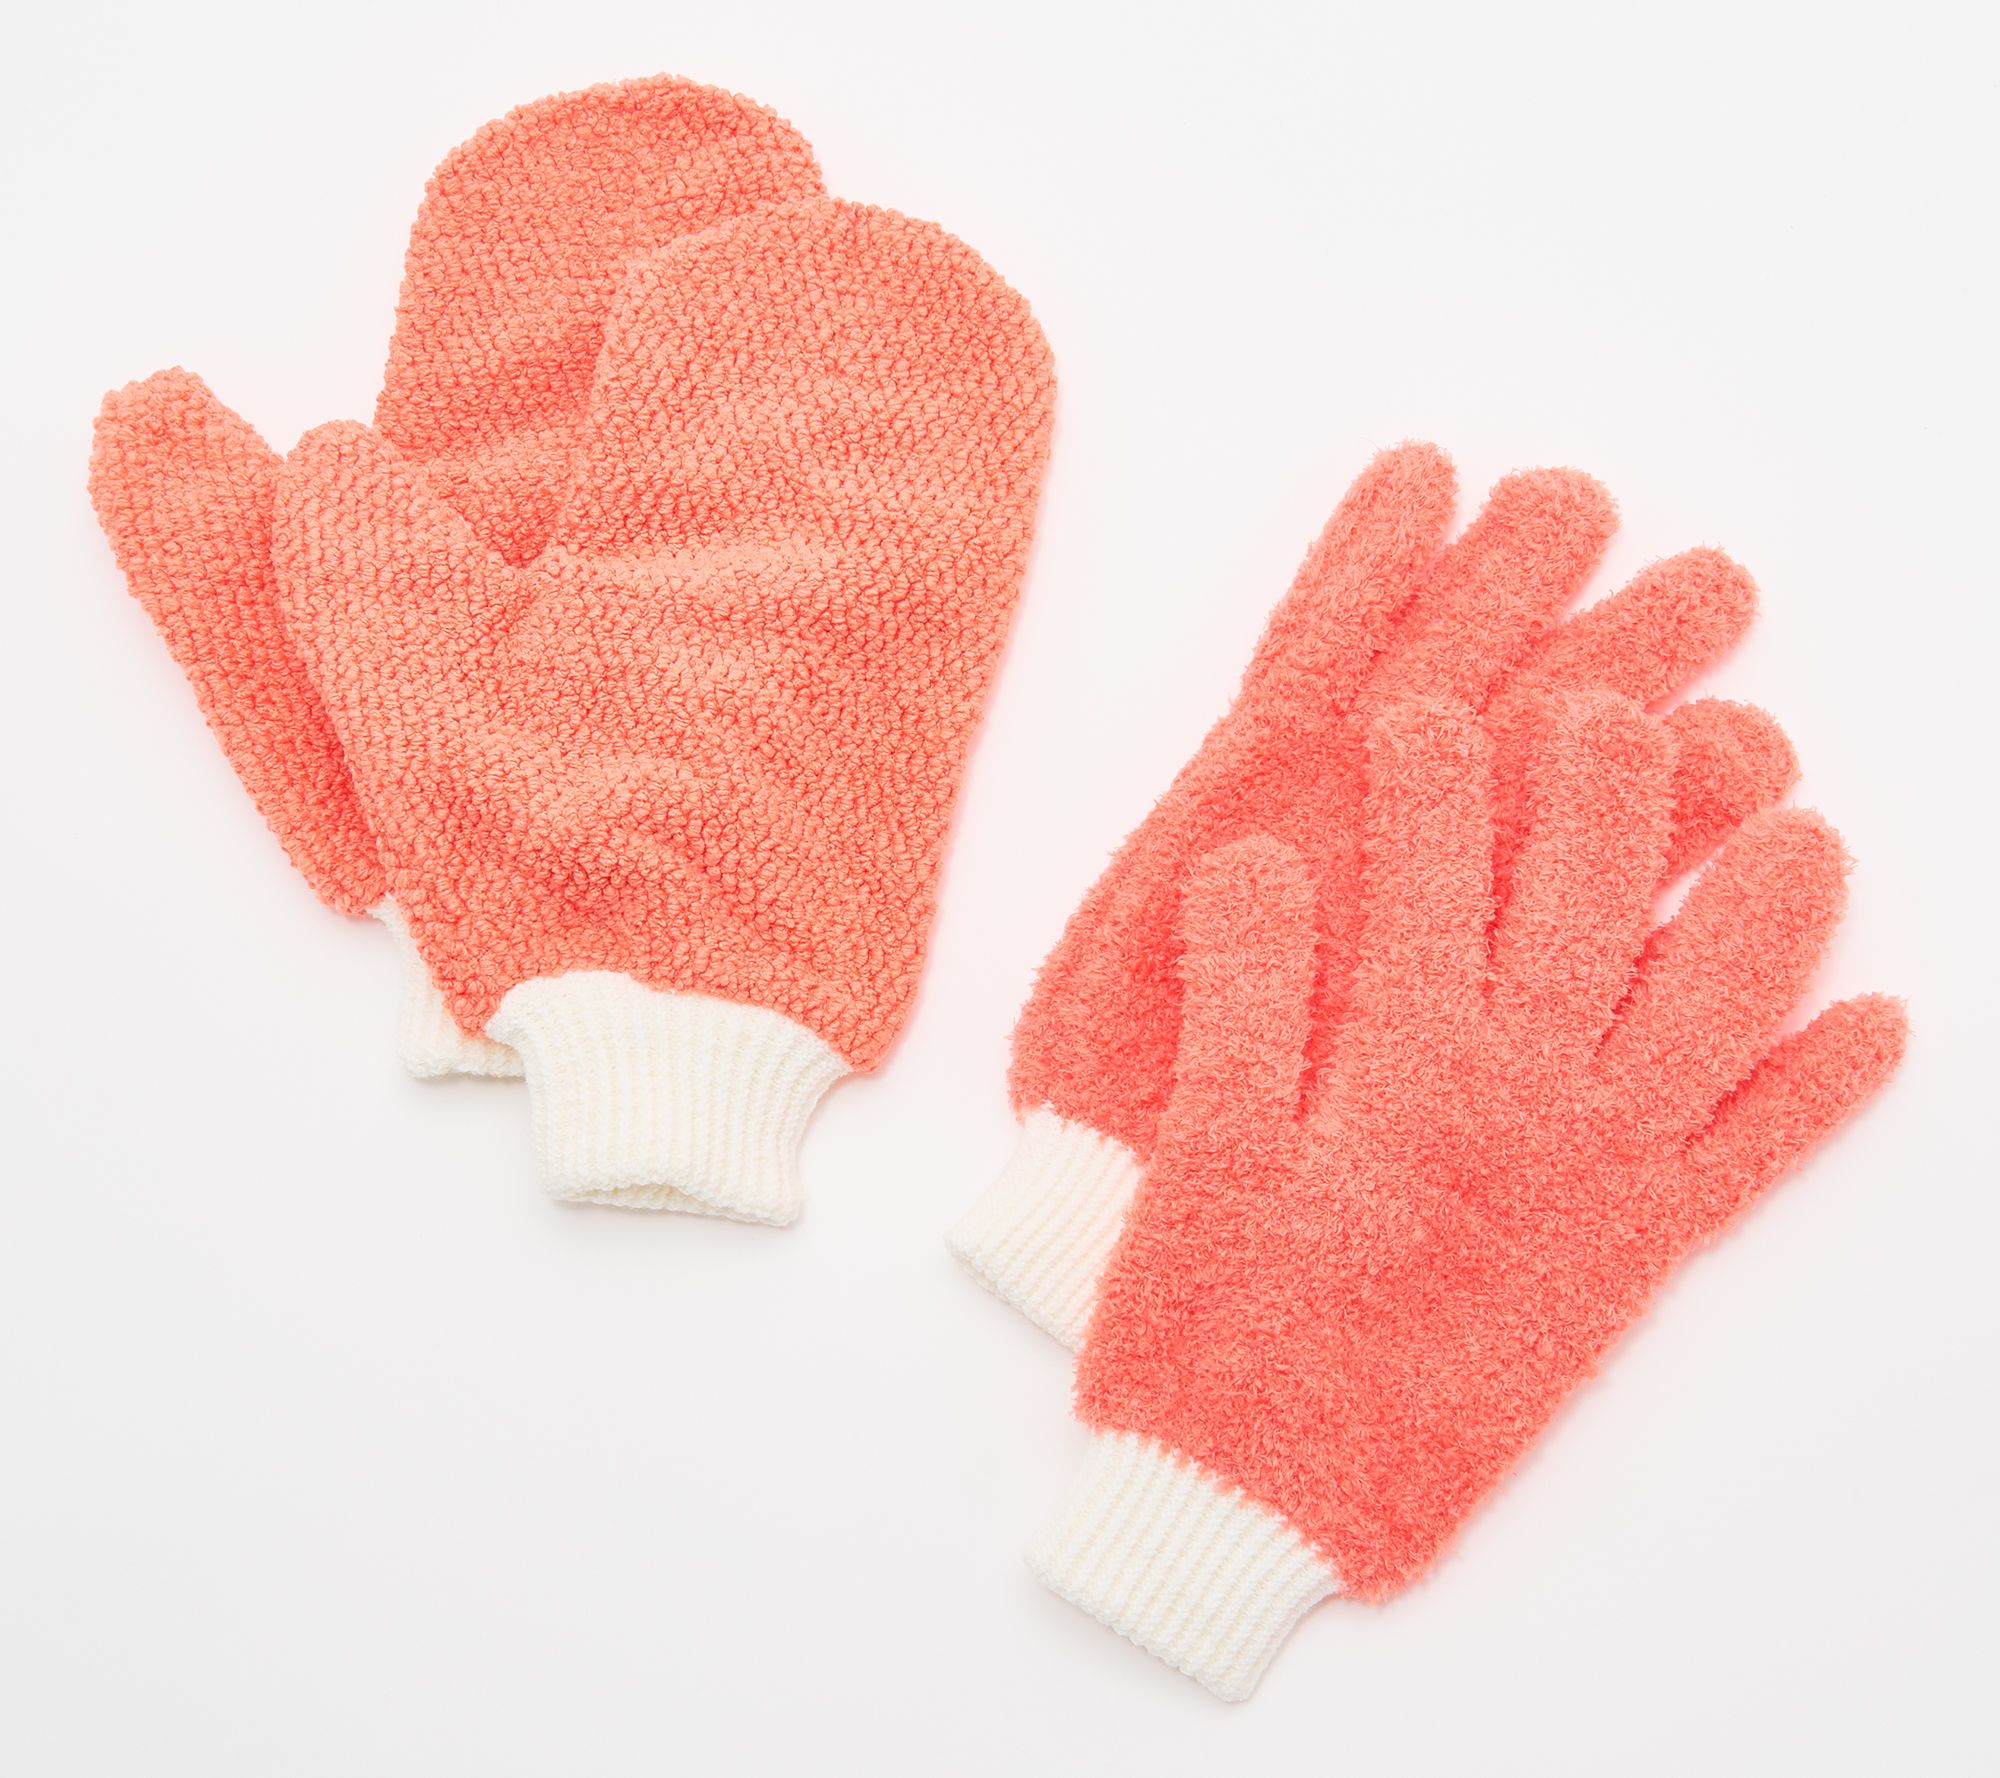 Microfiber Dusting Gloves, For Home, Finger Type: Full Fingered at